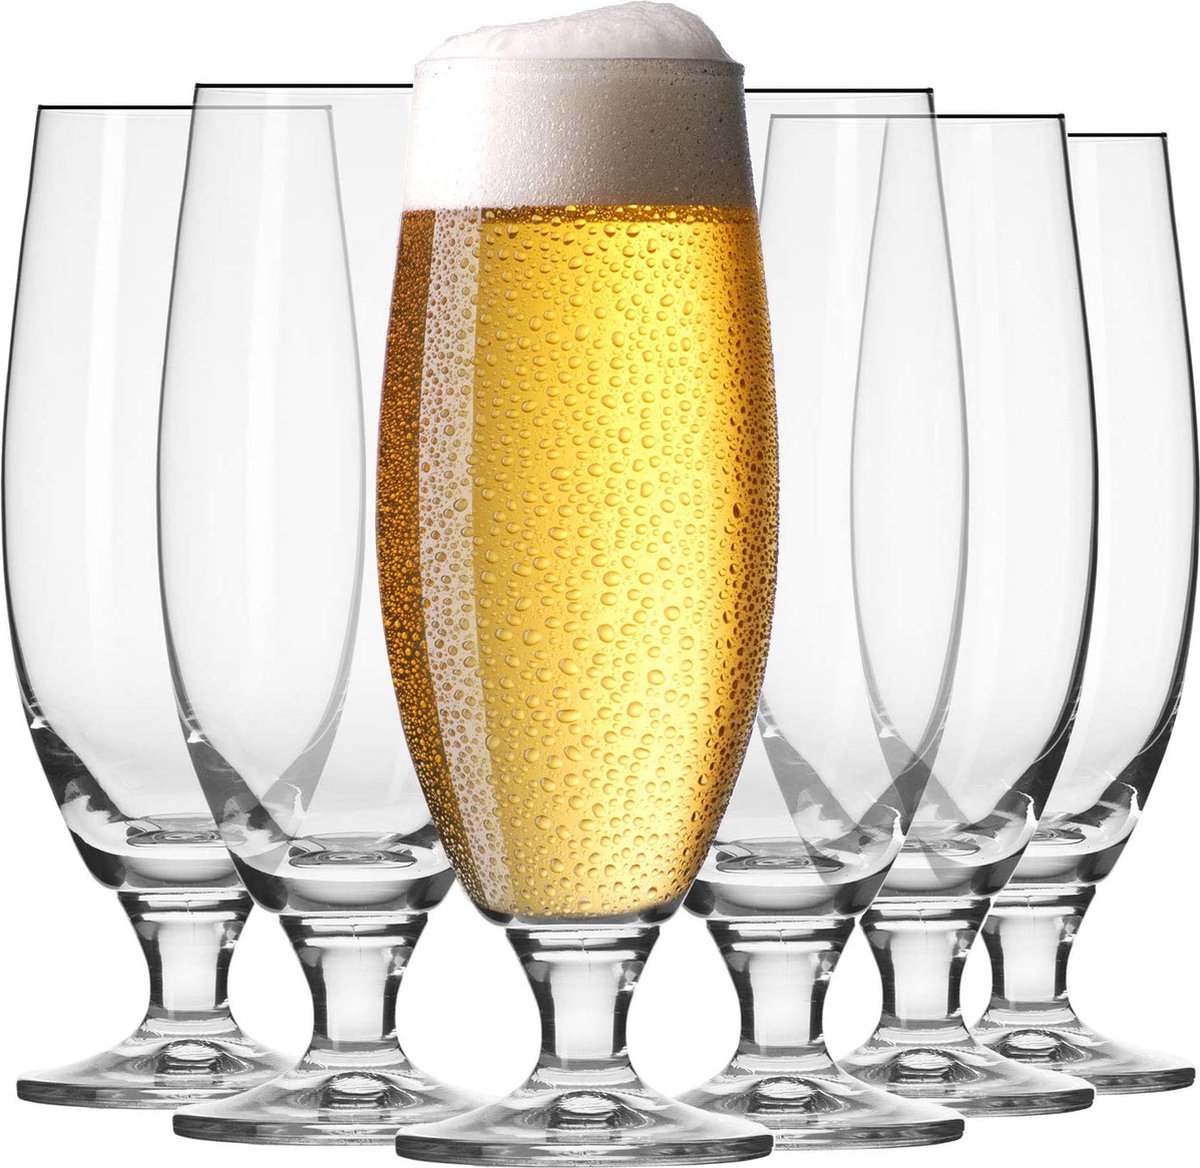 KROSNO Witte Bier Glazen | Set van 6 | 500 ml | Elite Collectie| Perfect voor Thuis, Restaurants en pubs | Vaatwasser Veilig